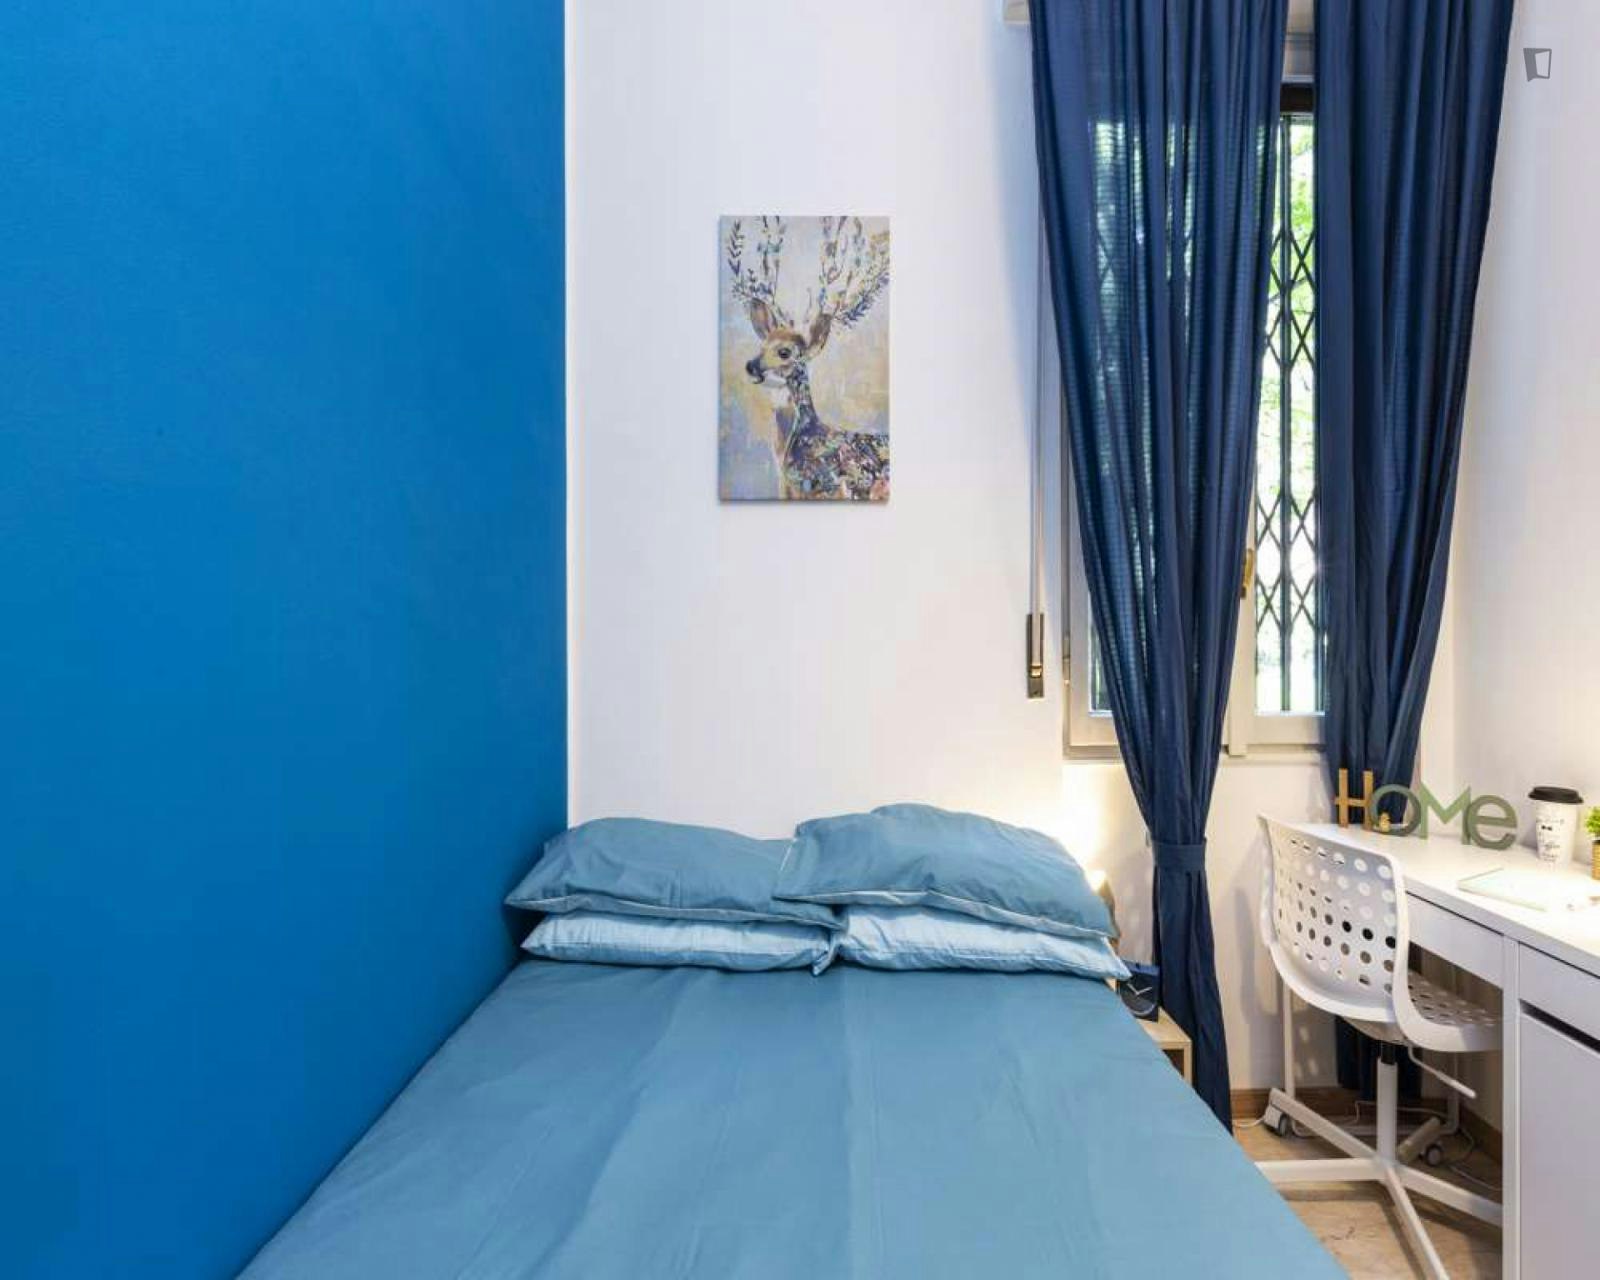 Lovely double bedroom in Lorenteggio